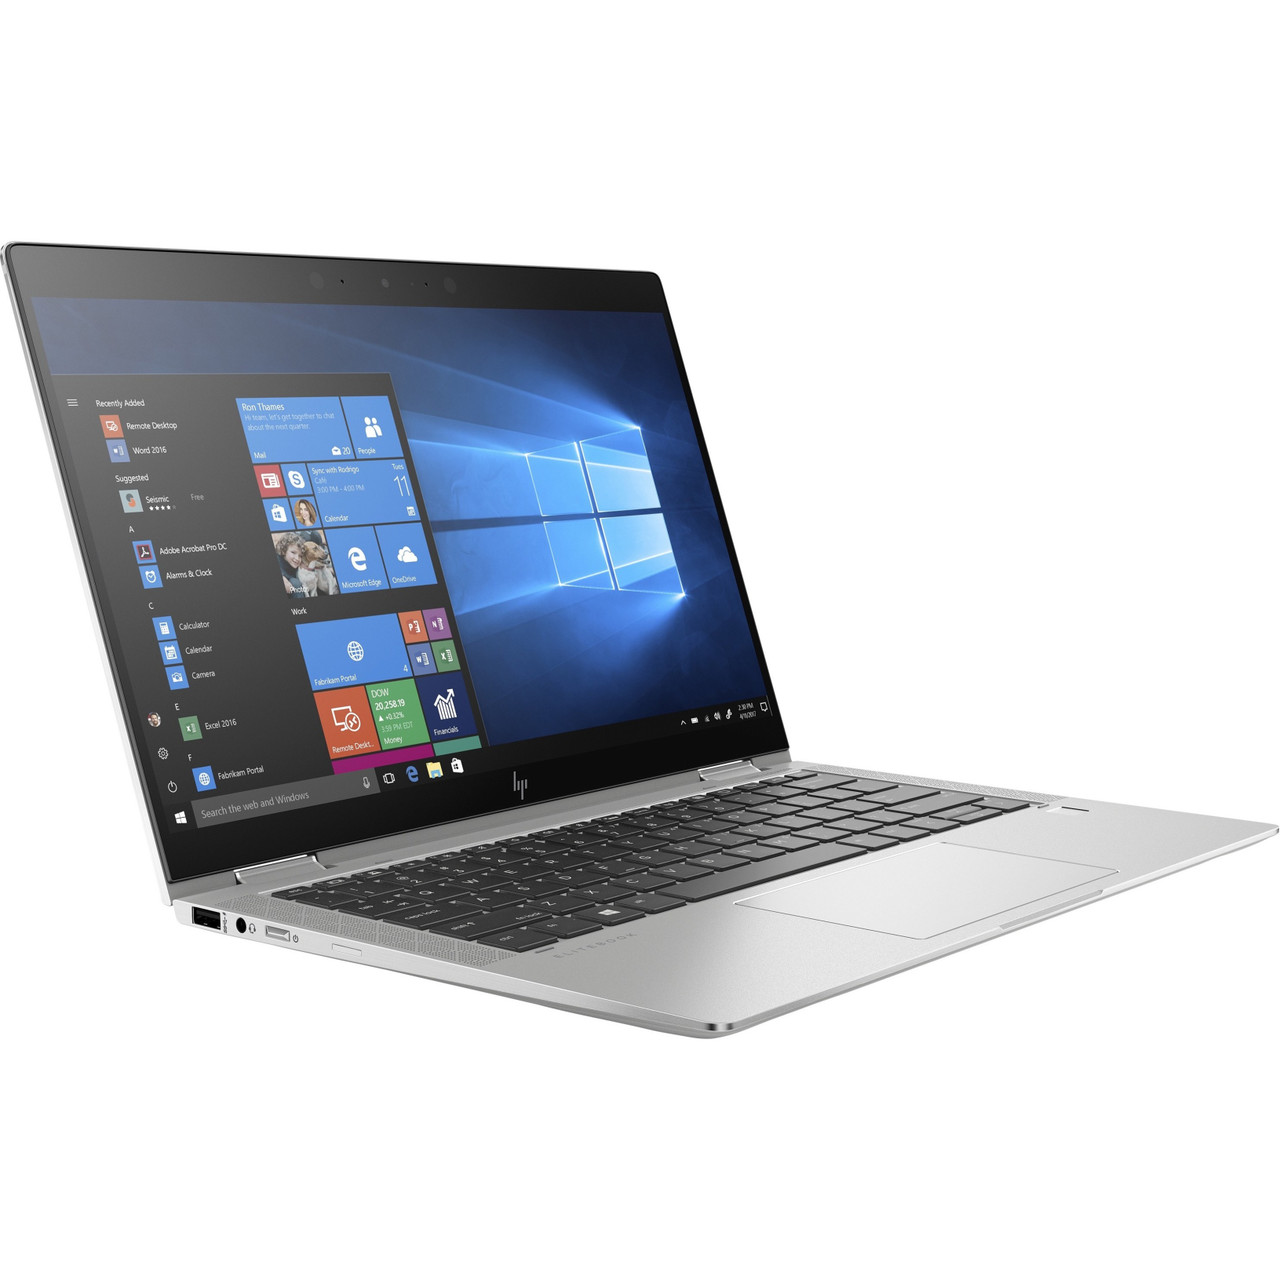 HP EliteBook x360 1030 G4 LTE Advanced 13.3" Touchscreen Convertible 2 in 1 Notebook - Intel Core i7 8th Gen i7-8665U Quad-core (4 Core) 1.90 GHz - 8 GB Total RAM - 256 GB SSD